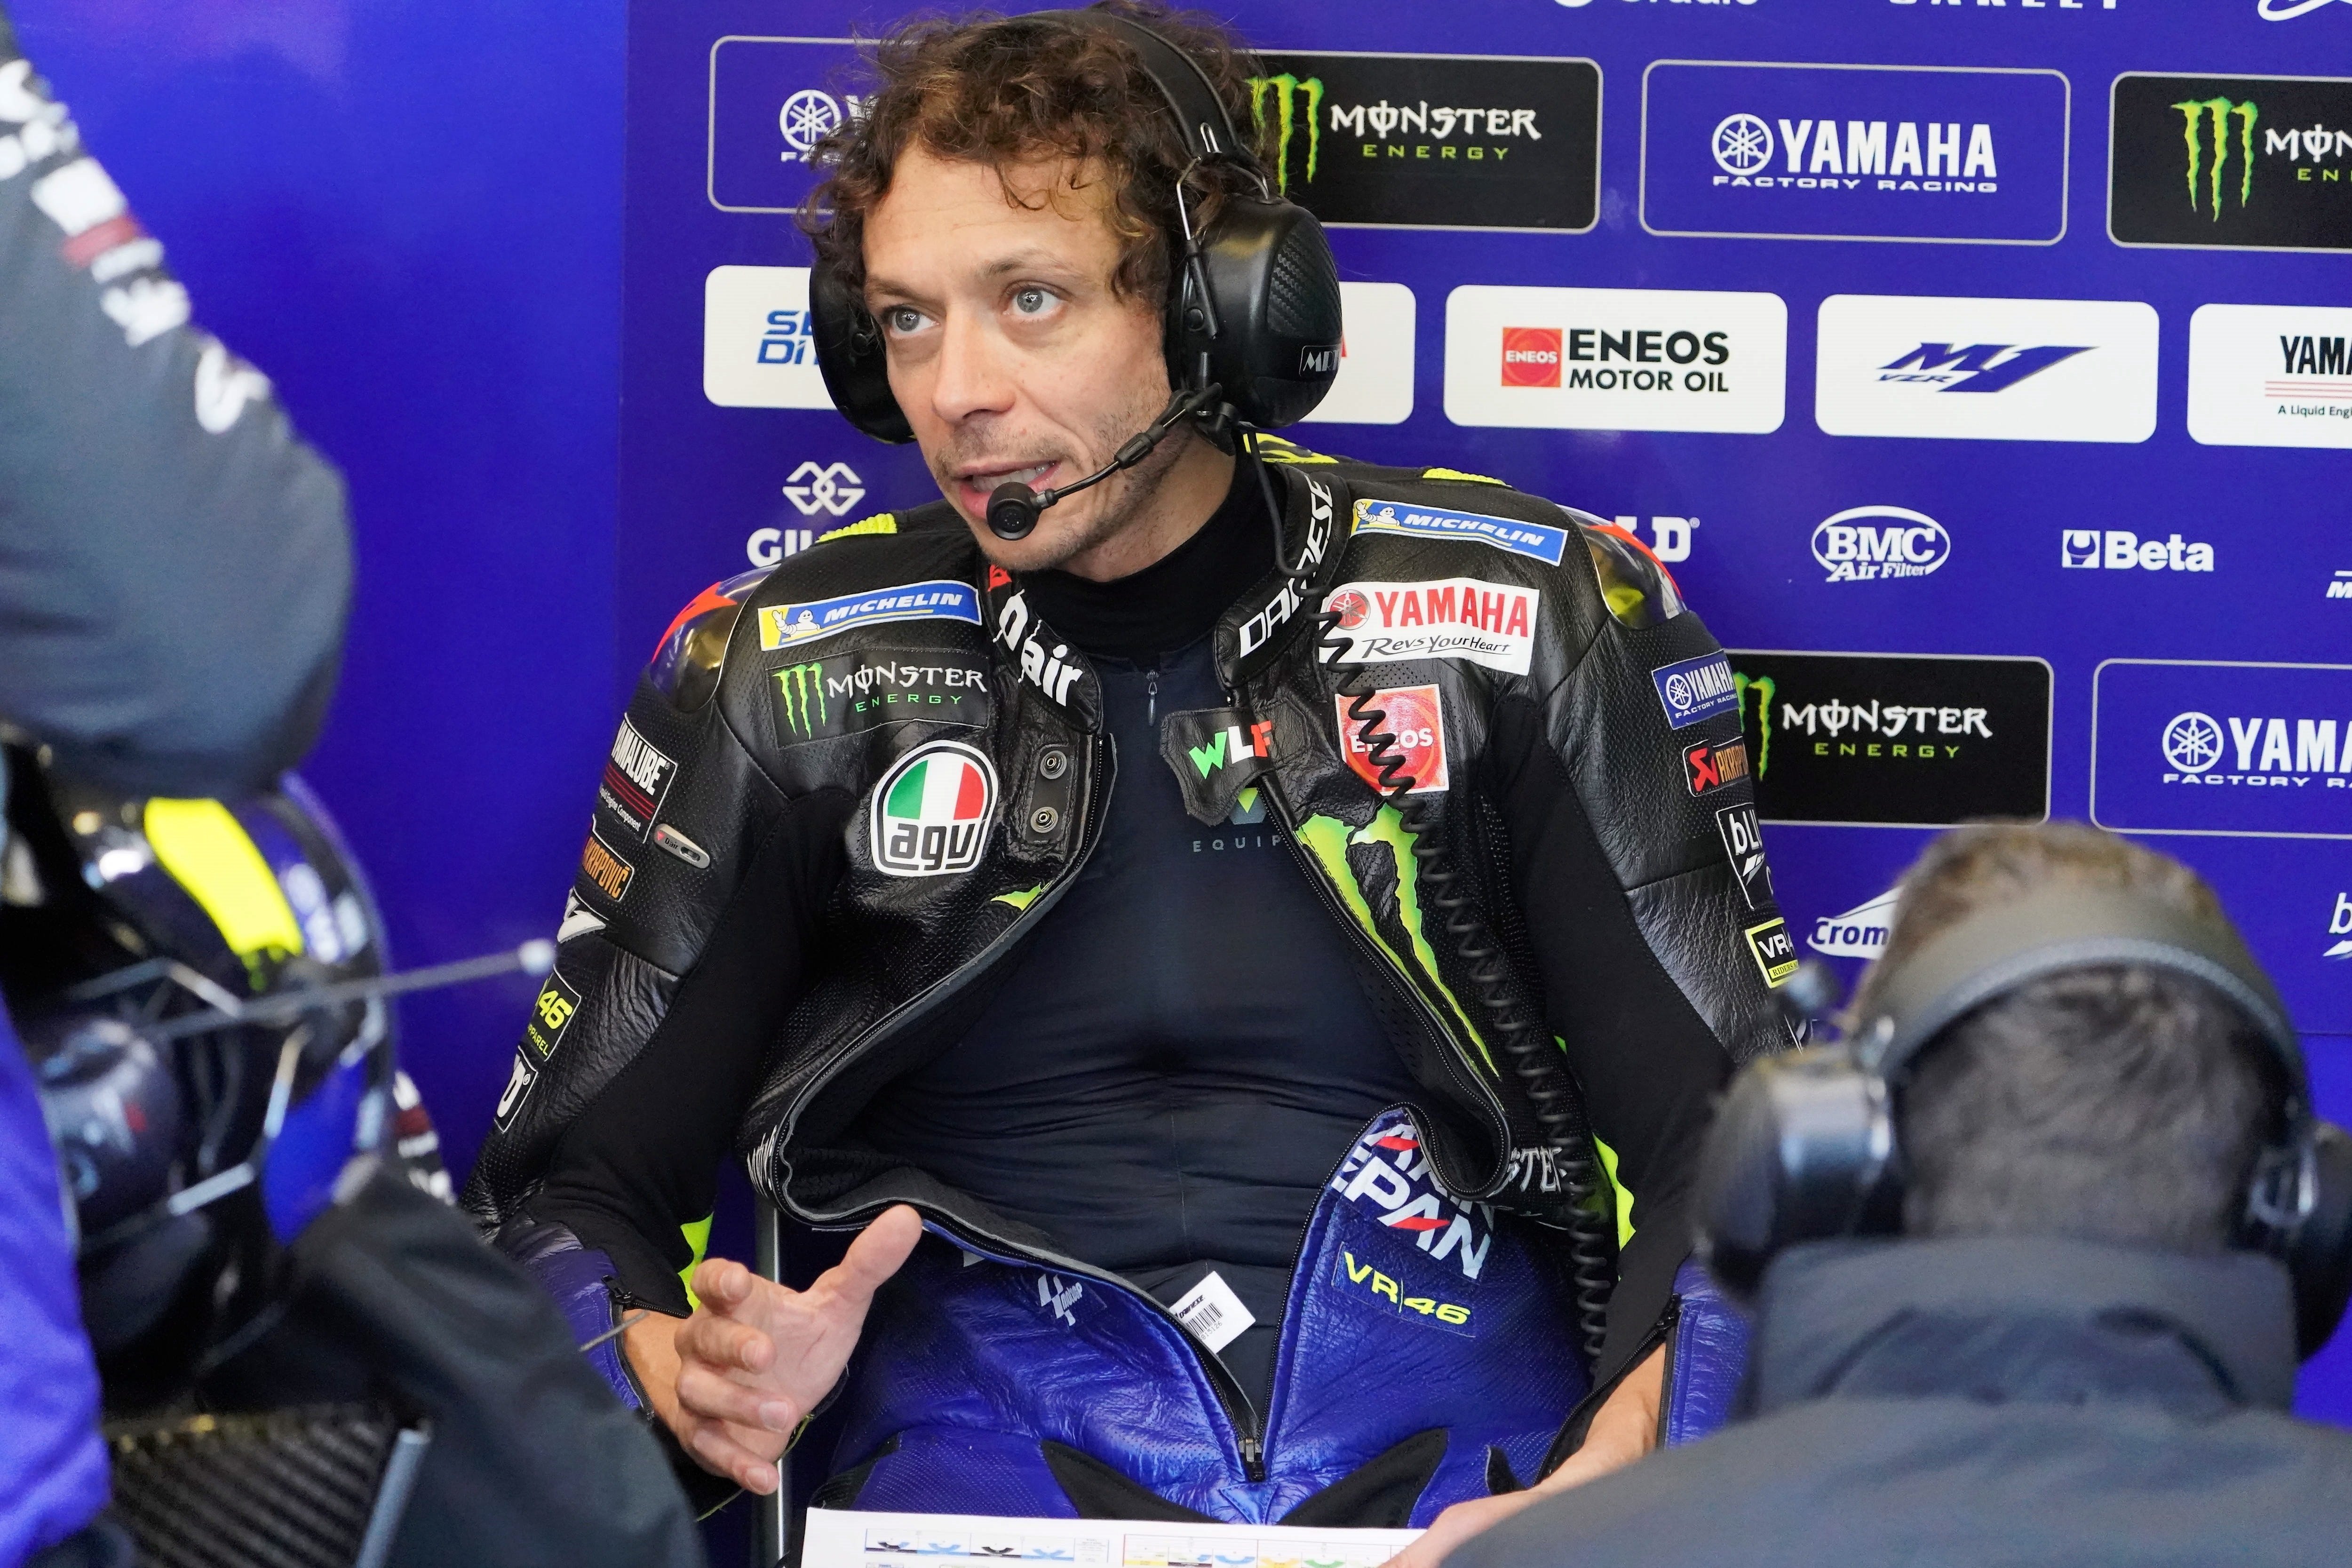 Rossi da positivo por Covid-19 y se pierde el GP de Aragón